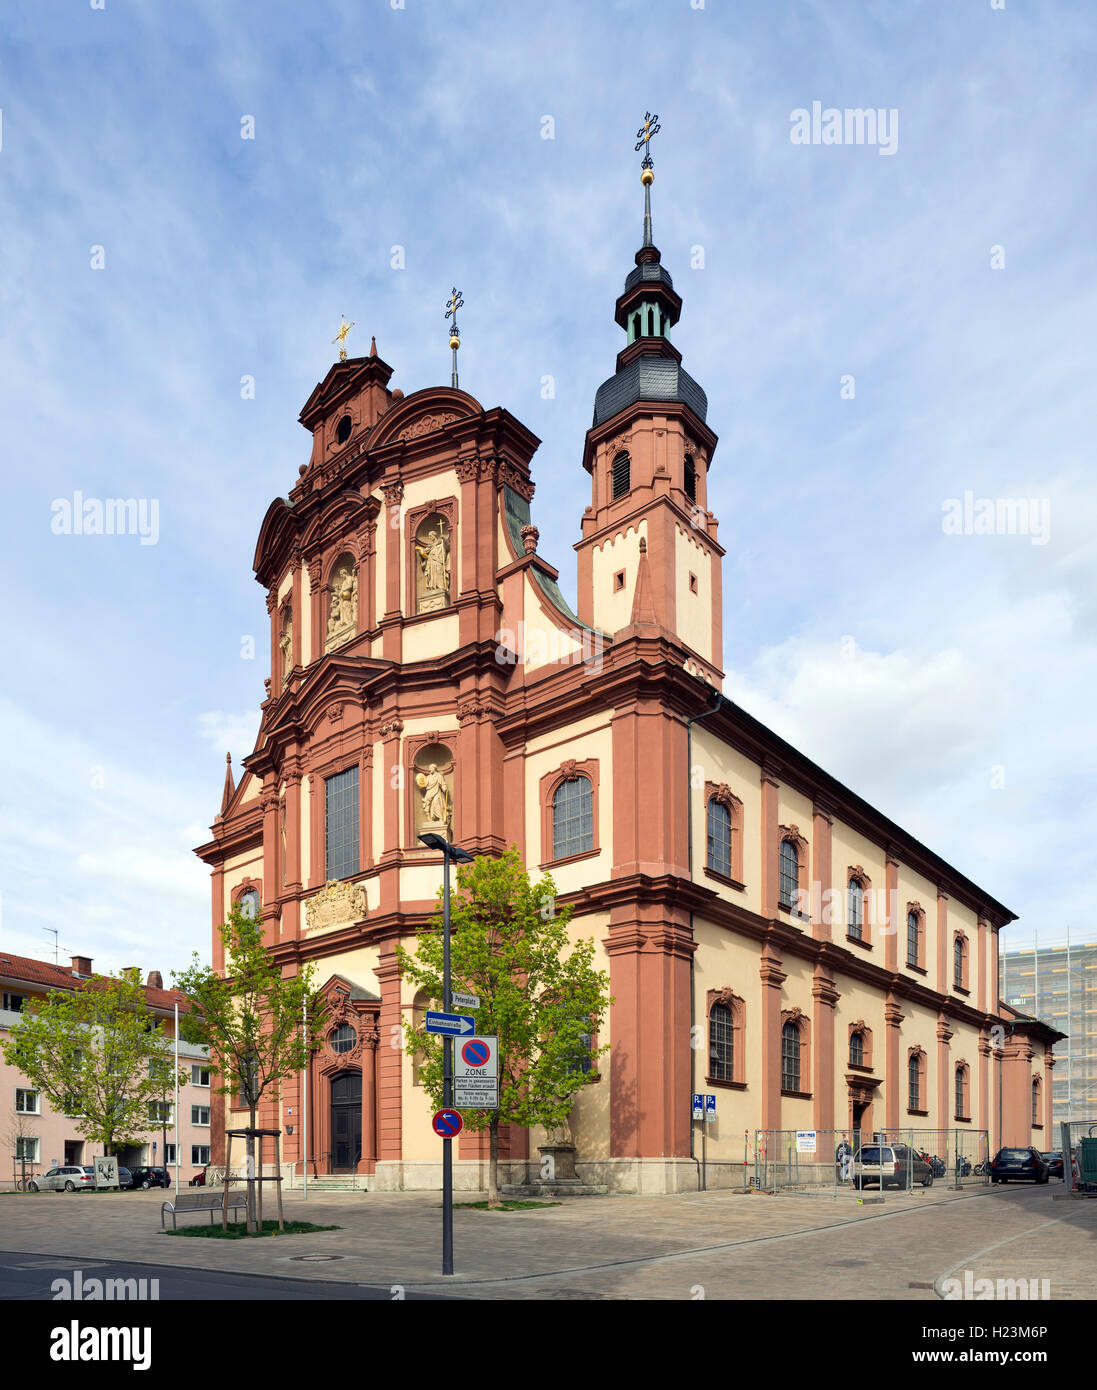 Katholische Pfarrkirche San Peter und Paul a Würzburg. Die Kirche geht auf einen romanischen Bau aus dem 12. Jahrhundert zurück Foto Stock